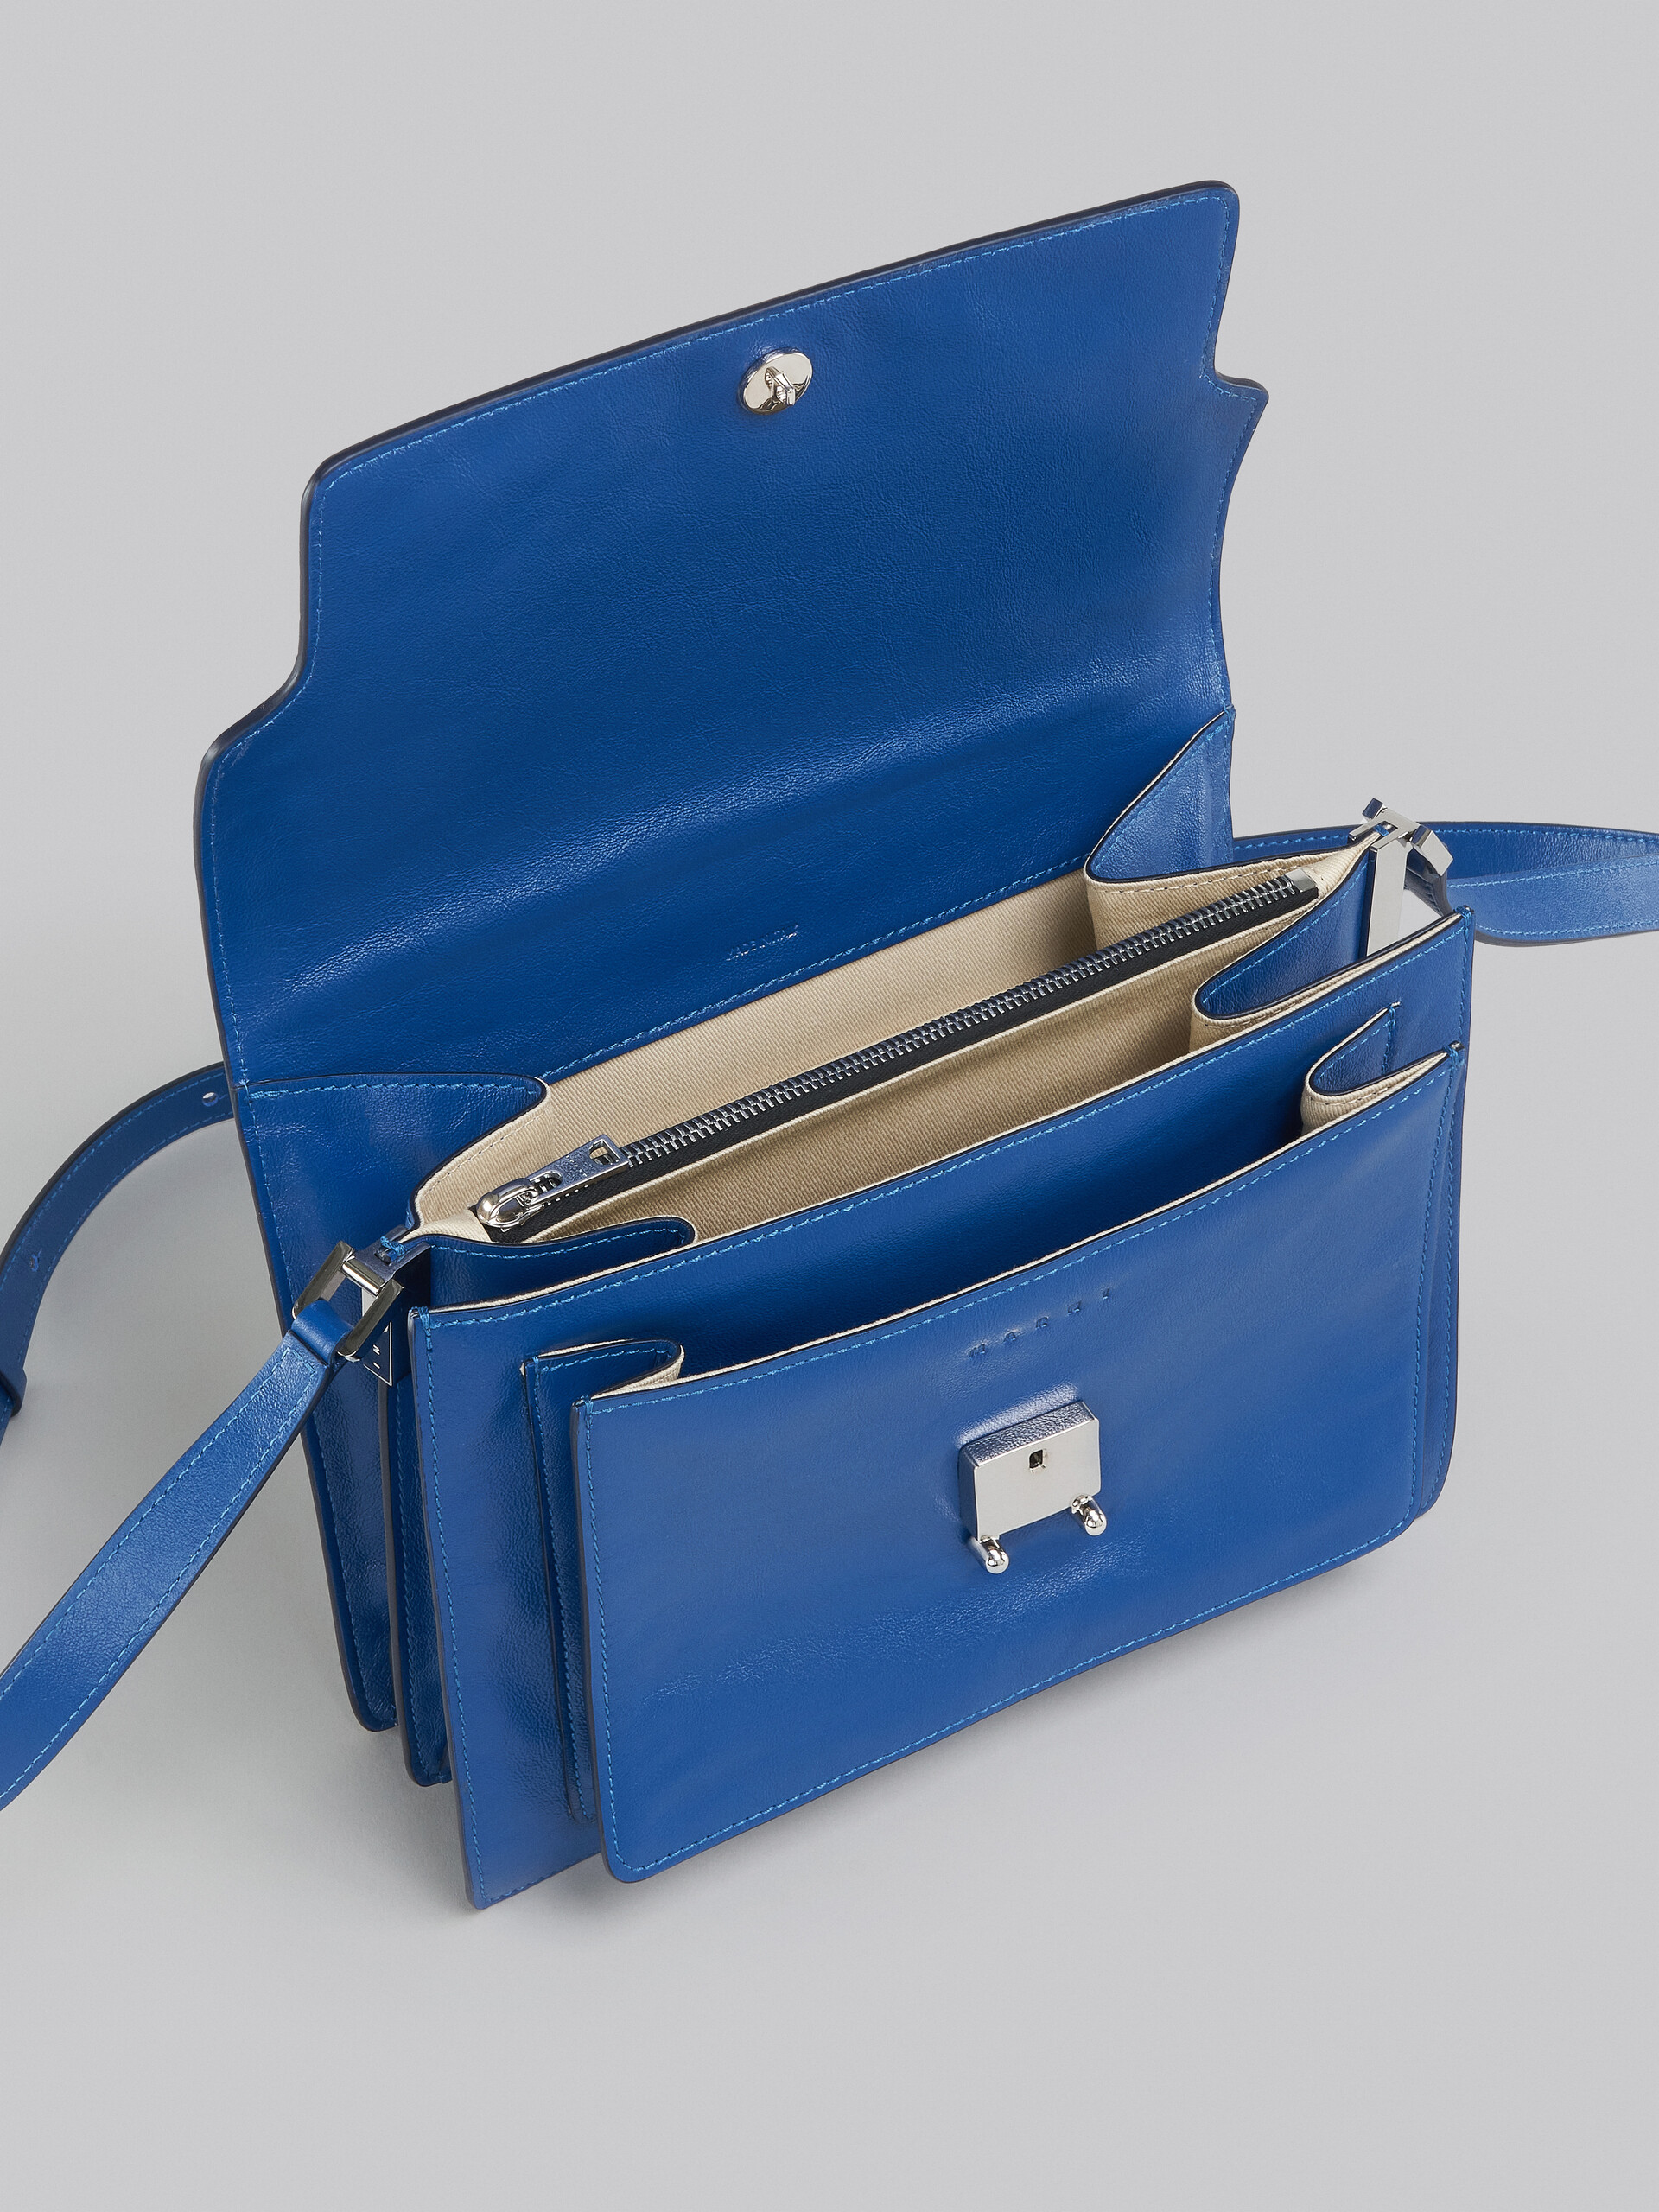 Trunk Soft Large Bag in blue leather - Shoulder Bag - Image 4